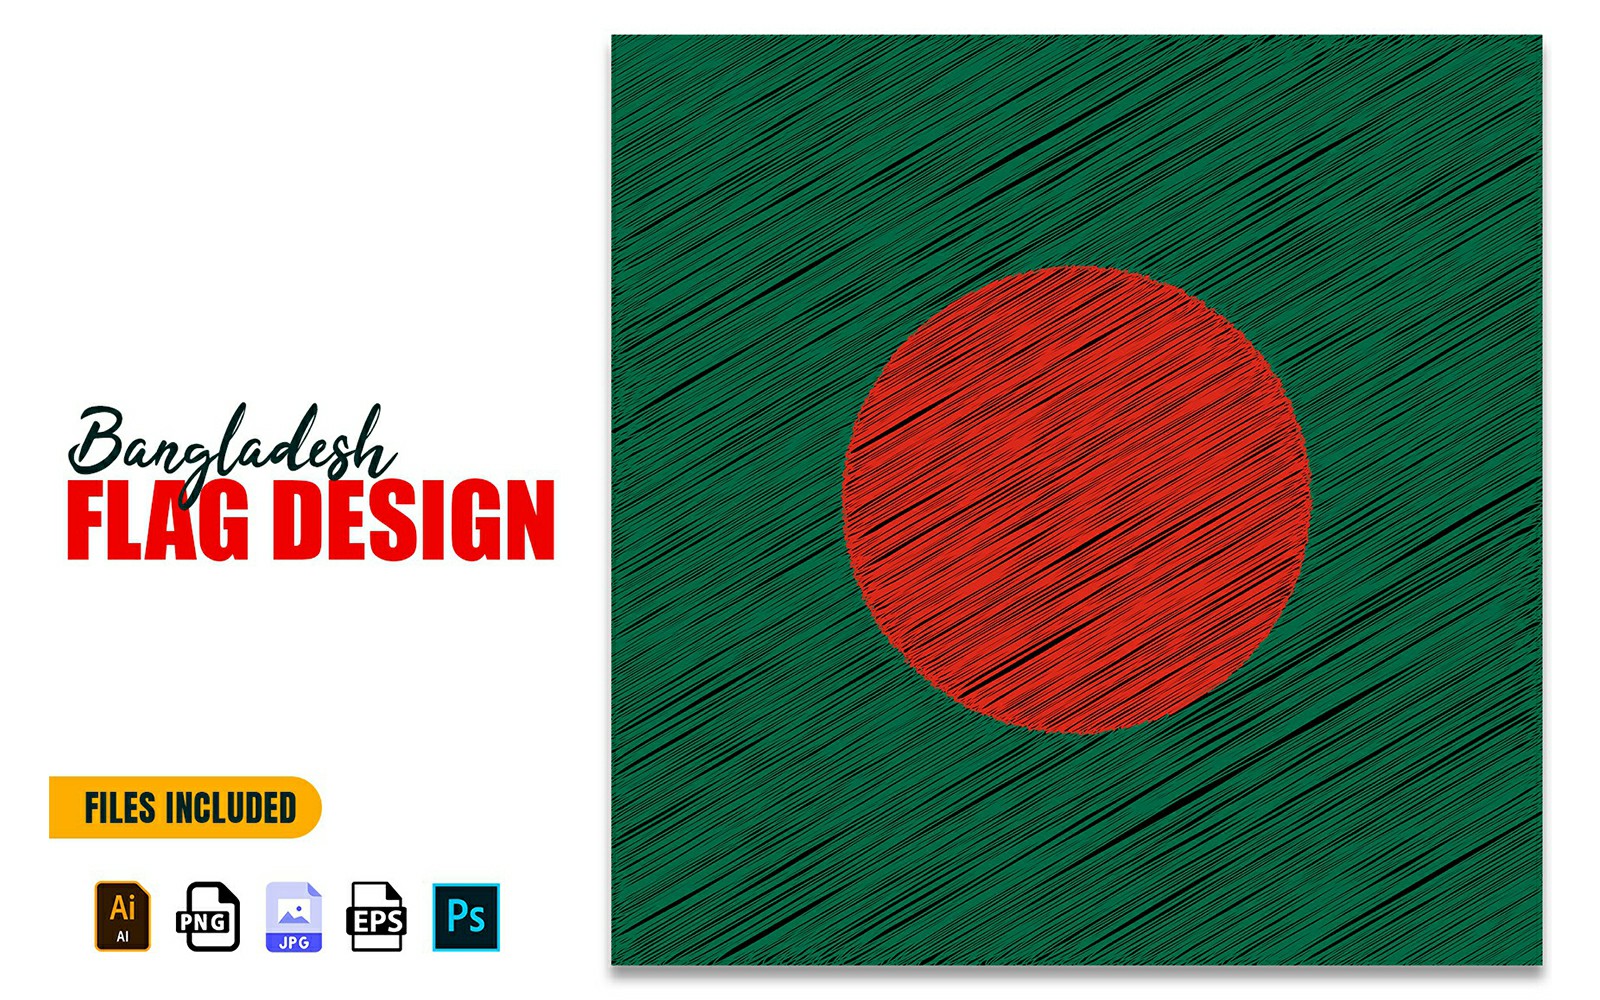 26 March Bangladesh Independence Flag Design Illustration